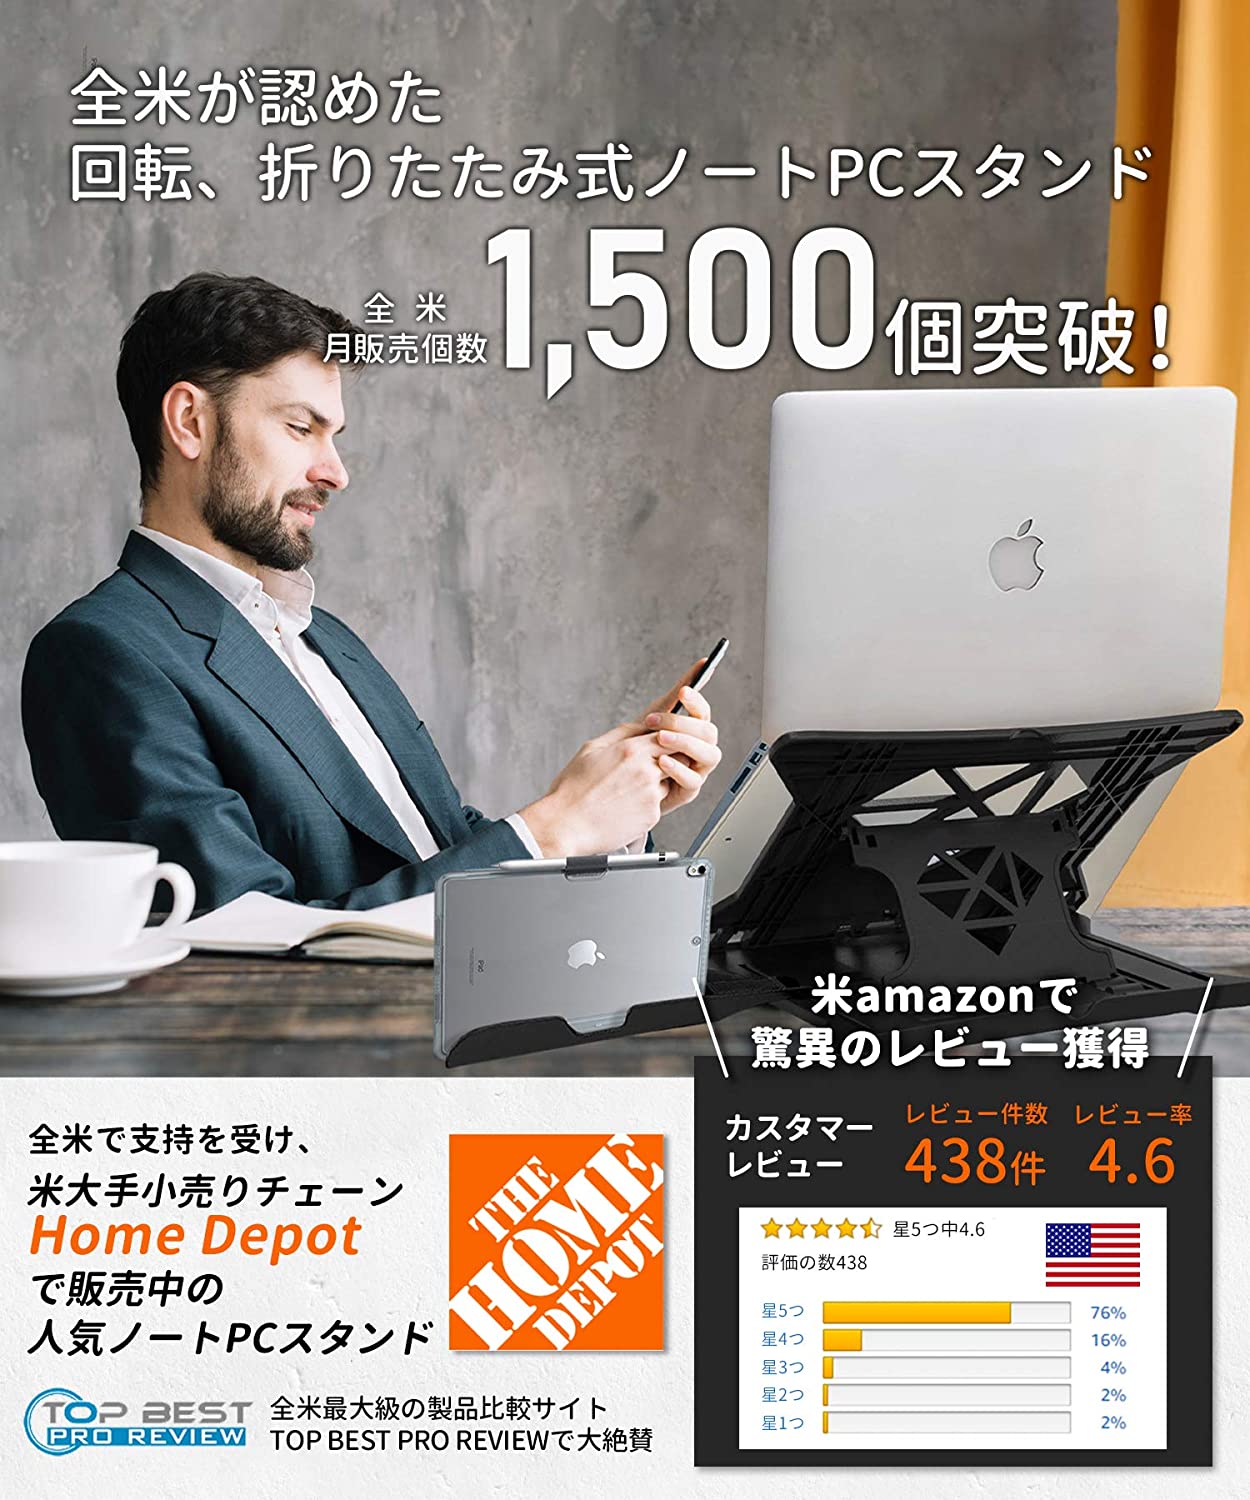 Carnation】全米が認めたノートPCスタンドが日本上陸！【アメリカで大人気】おすすめパソコンスタンドラップトップデスクAmazonレビュー -  サッパTVの毎日がエブリデイ